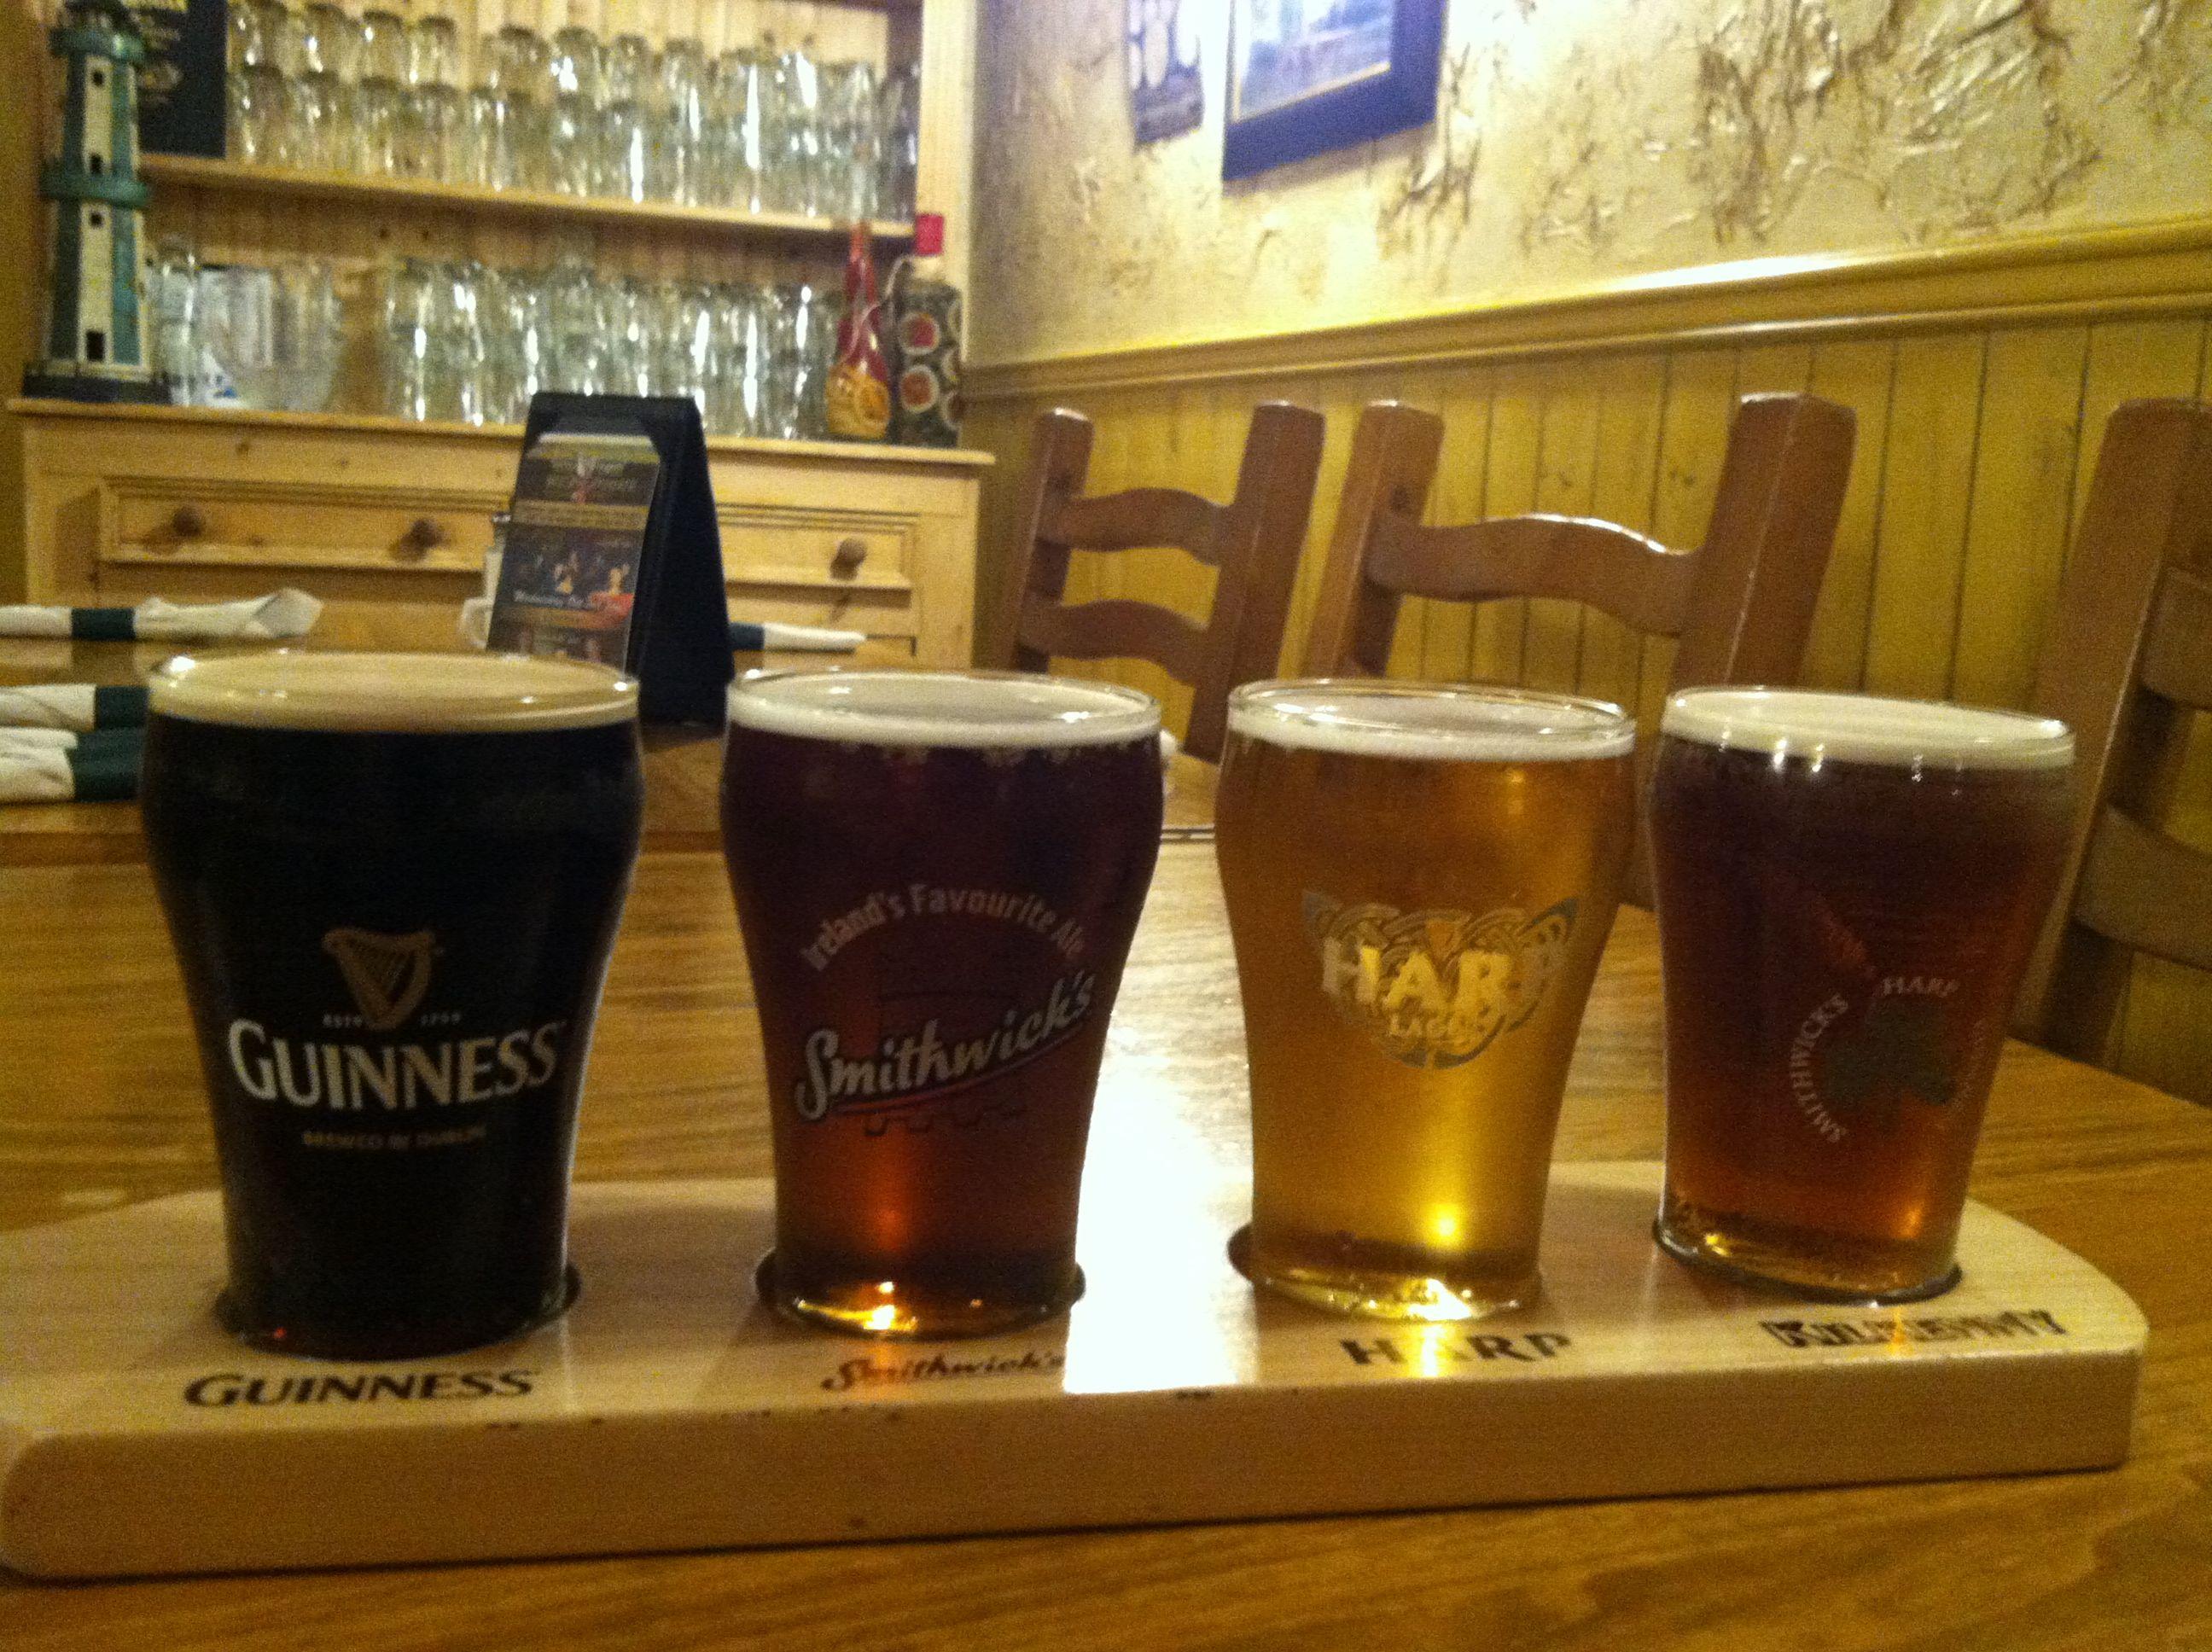 Smithwick's Harp and Logo - Shamrack beer sampler...Guinness, Smithwicks, Harp, and Kilkenny ...